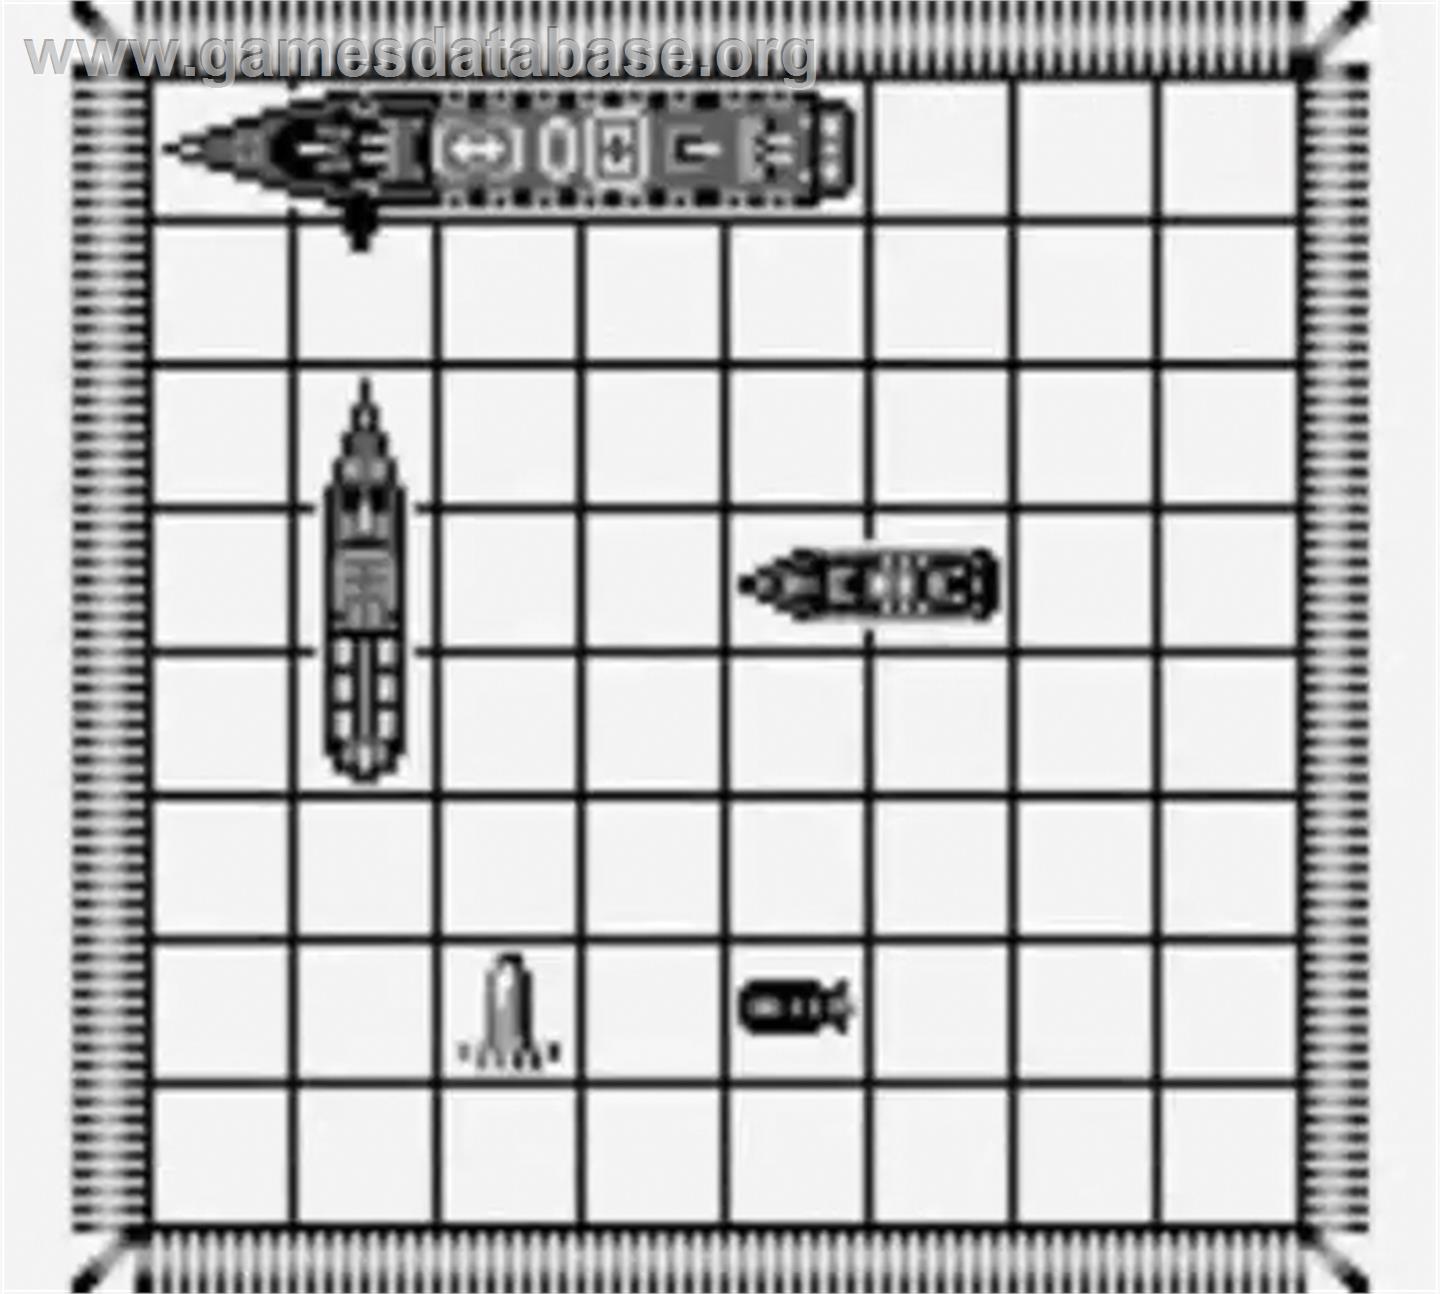 Battleship - Nintendo Game Boy - Artwork - In Game